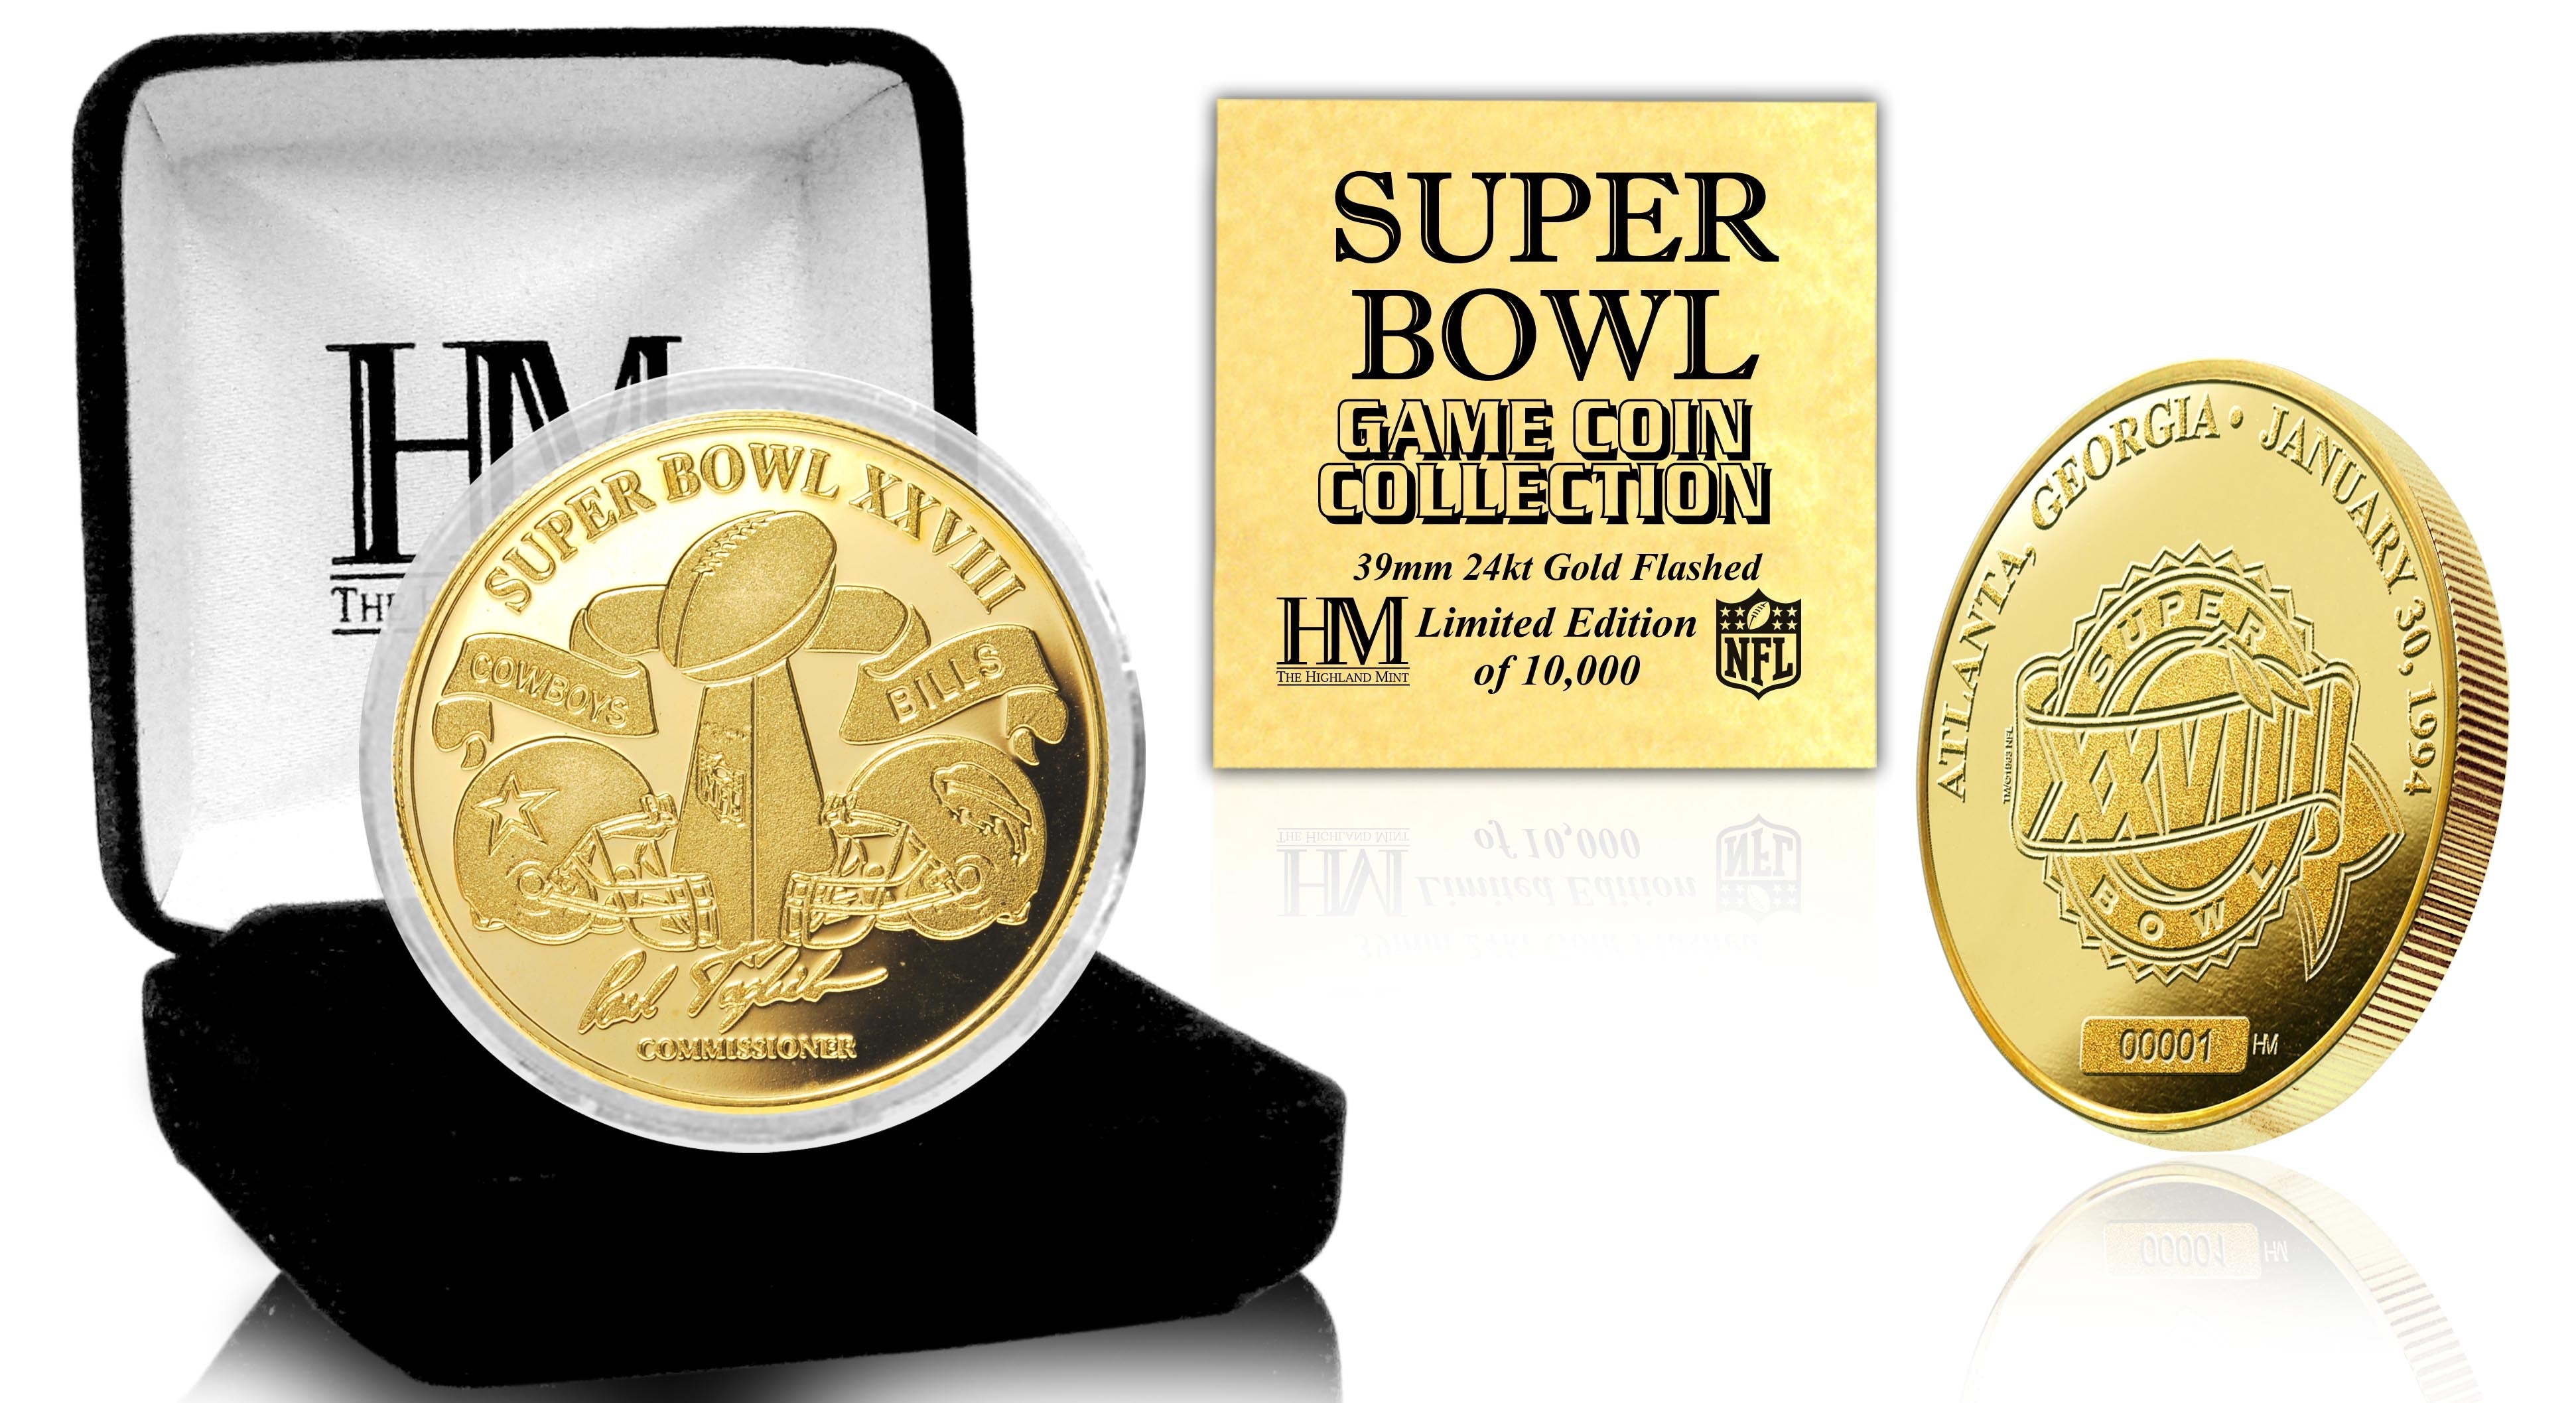 Super Bowl XXVIII 24kt Gold Flip Coin